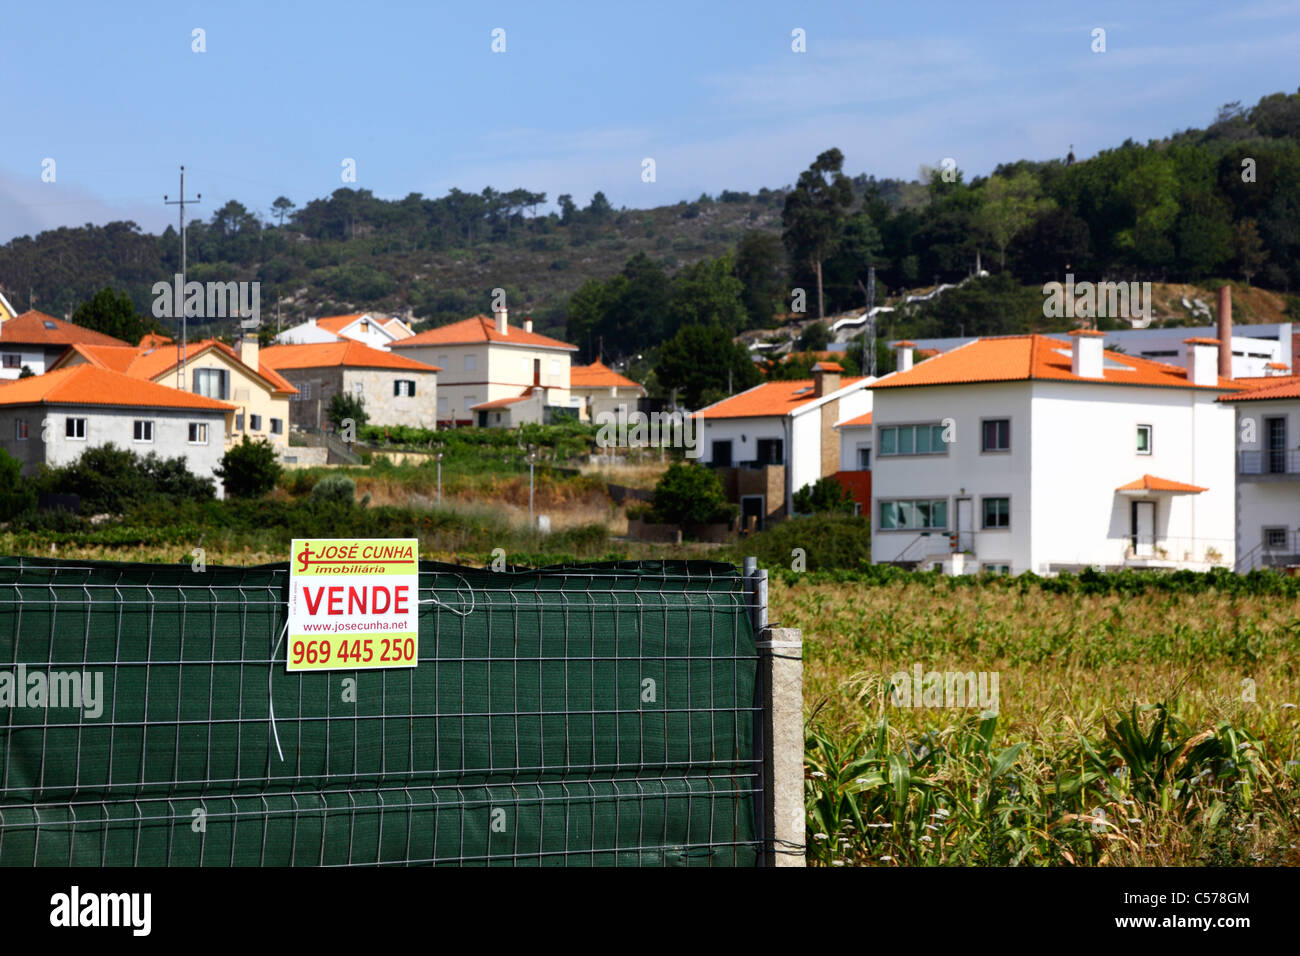 Land for sale for real estate development, Vila Praia de Ancora, northern Portugal Stock Photo